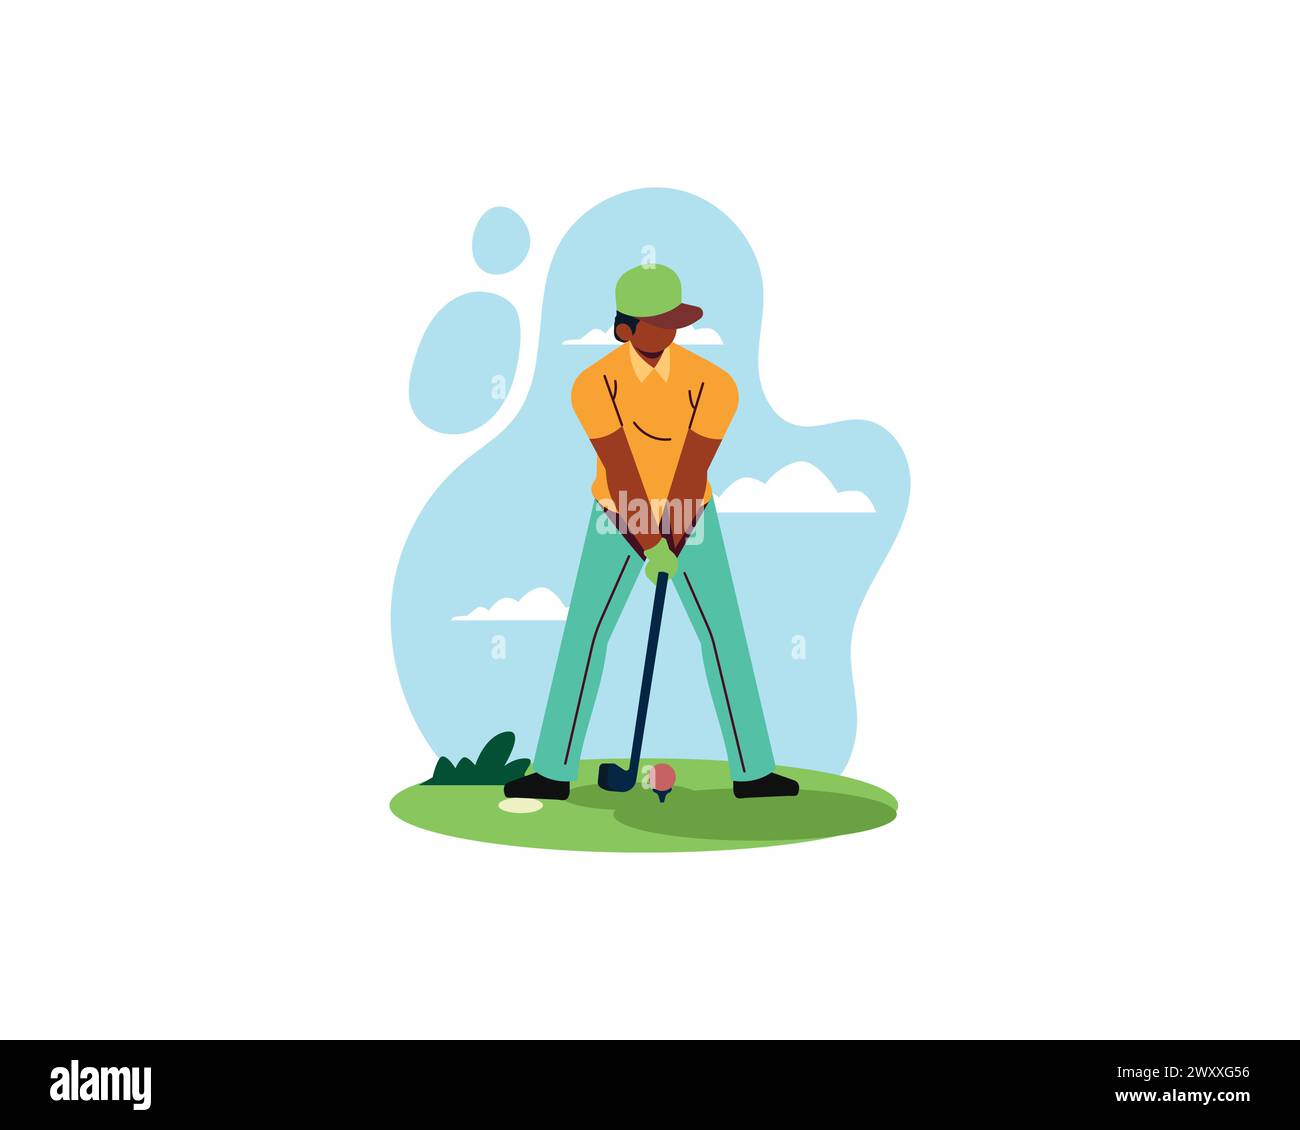 Golfer spielt Golf Vektor Illustration. Cartoon isolierter Mann mit Hut mit Schläger, der auf dem Feld Ball zum Loch schlägt, Aktion des Spielercharakters in Kappe Stock Vektor